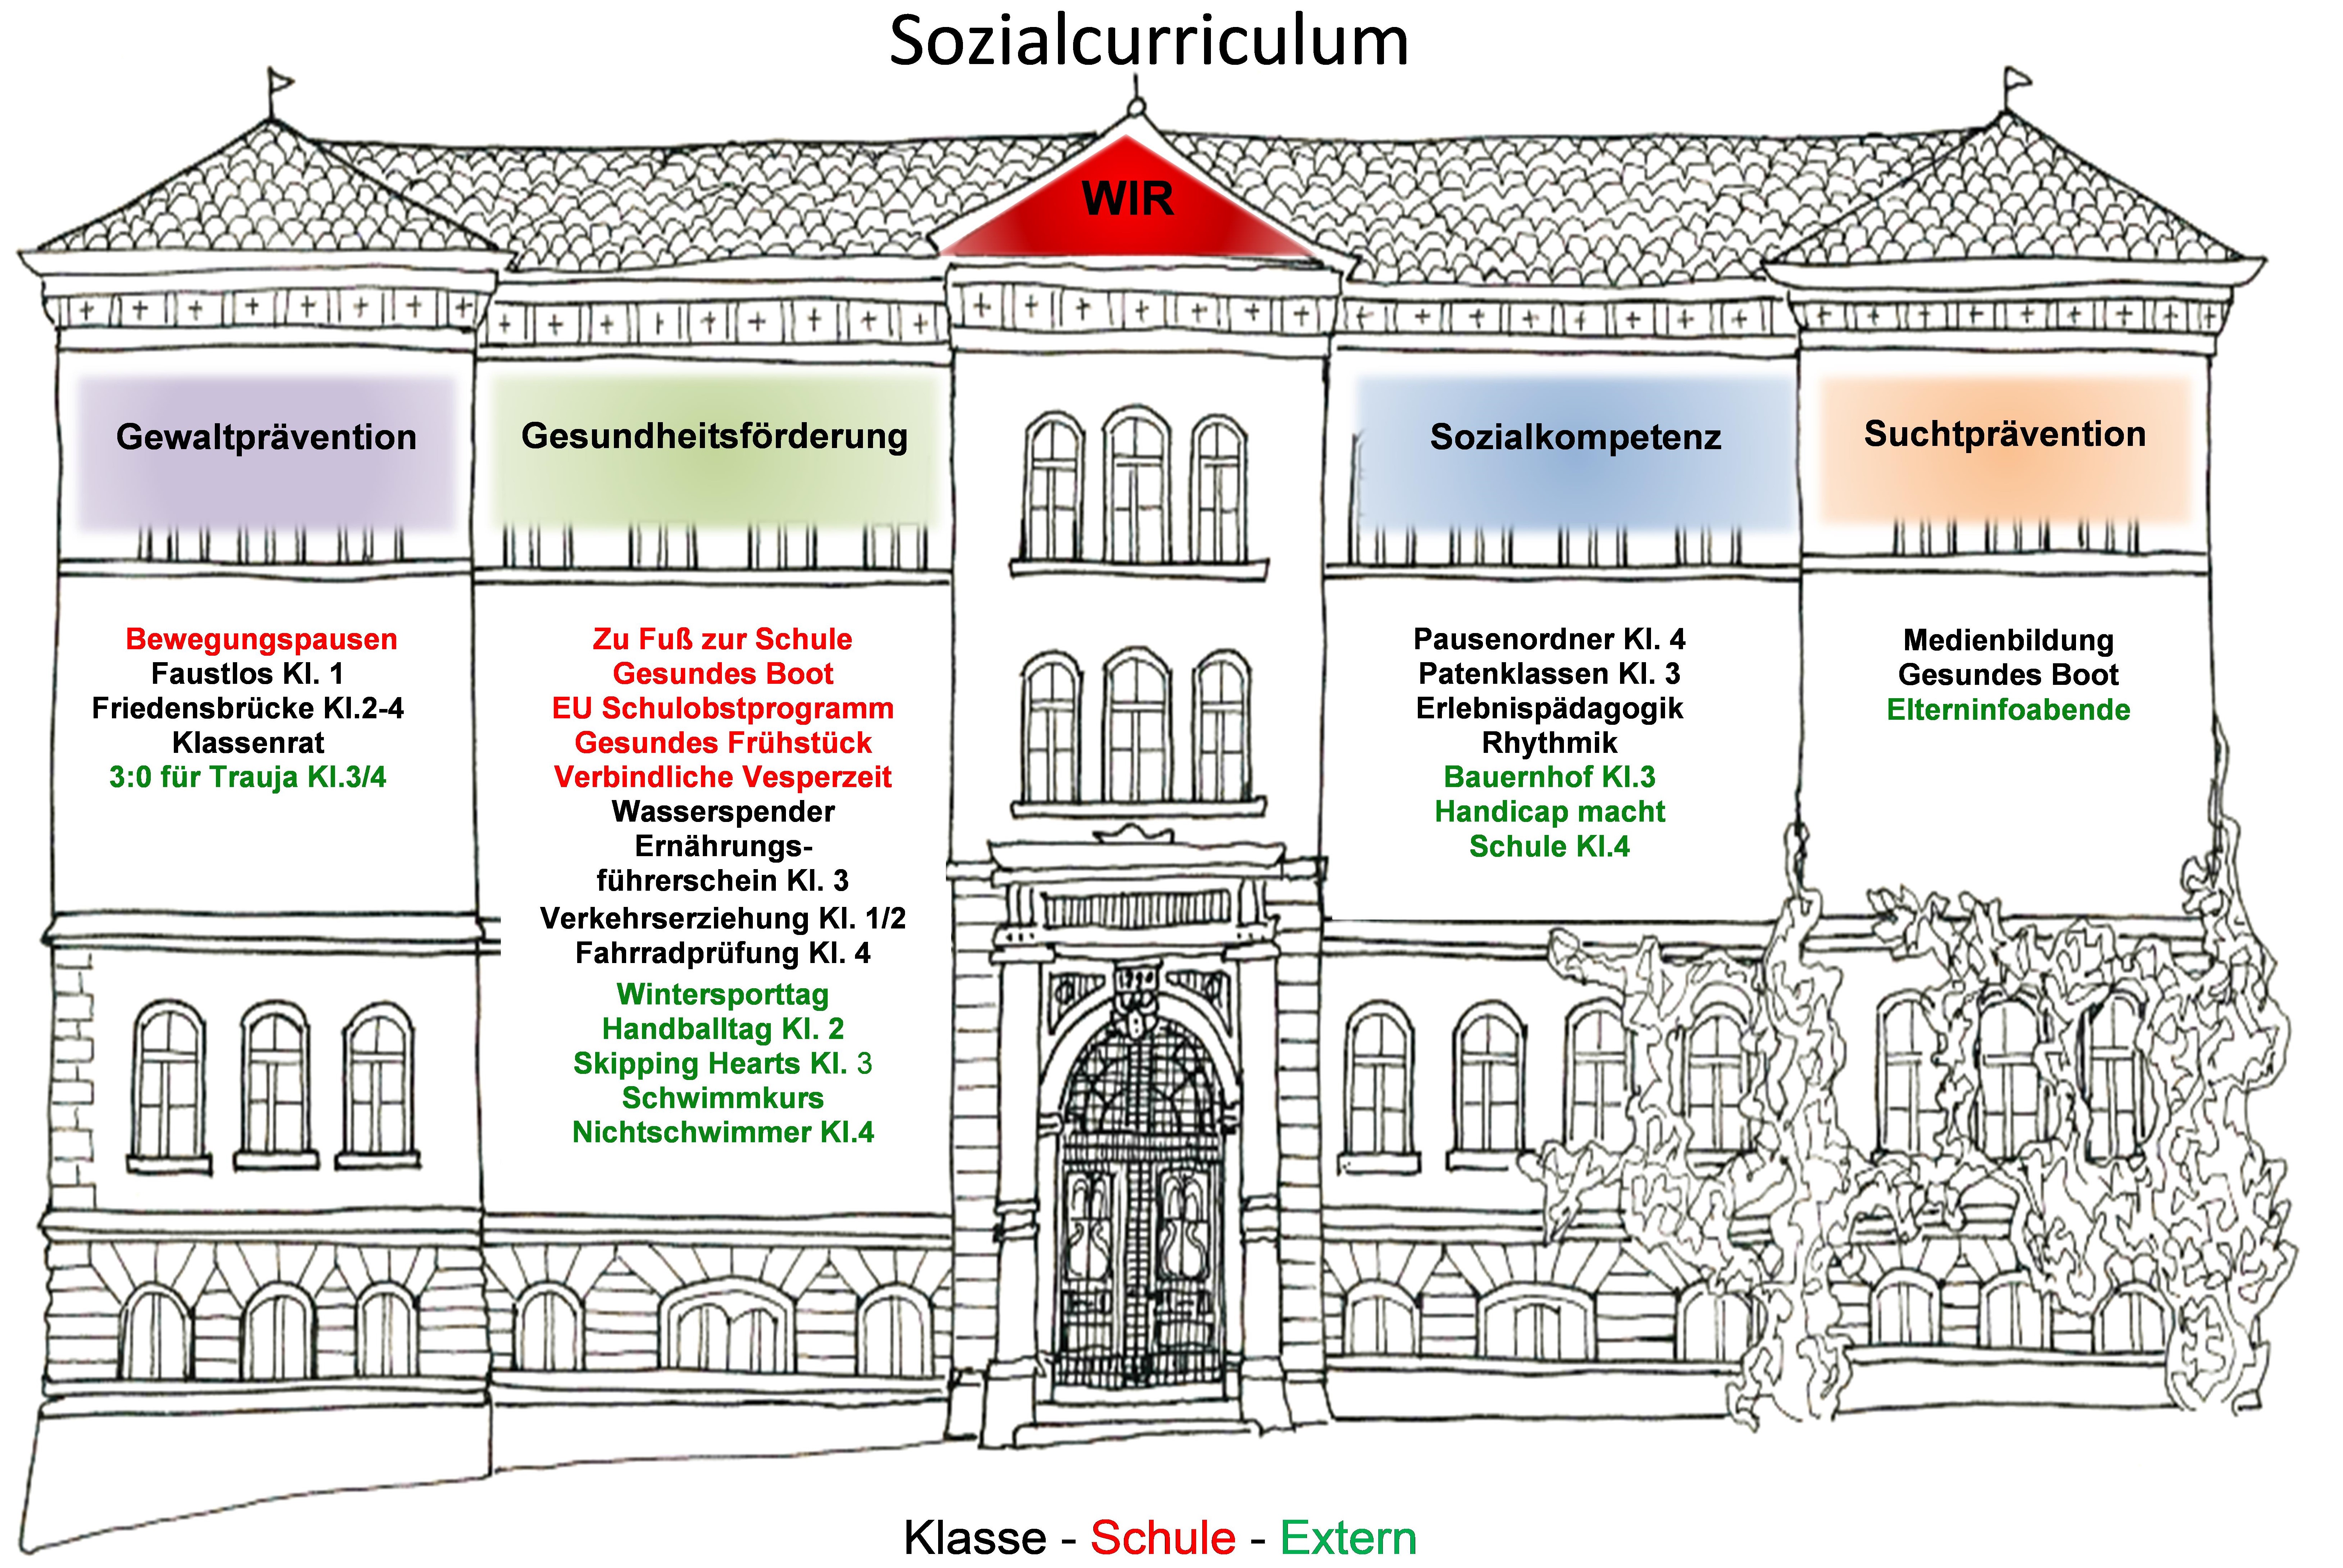 Sozialcurriculum der Schlosswallschule